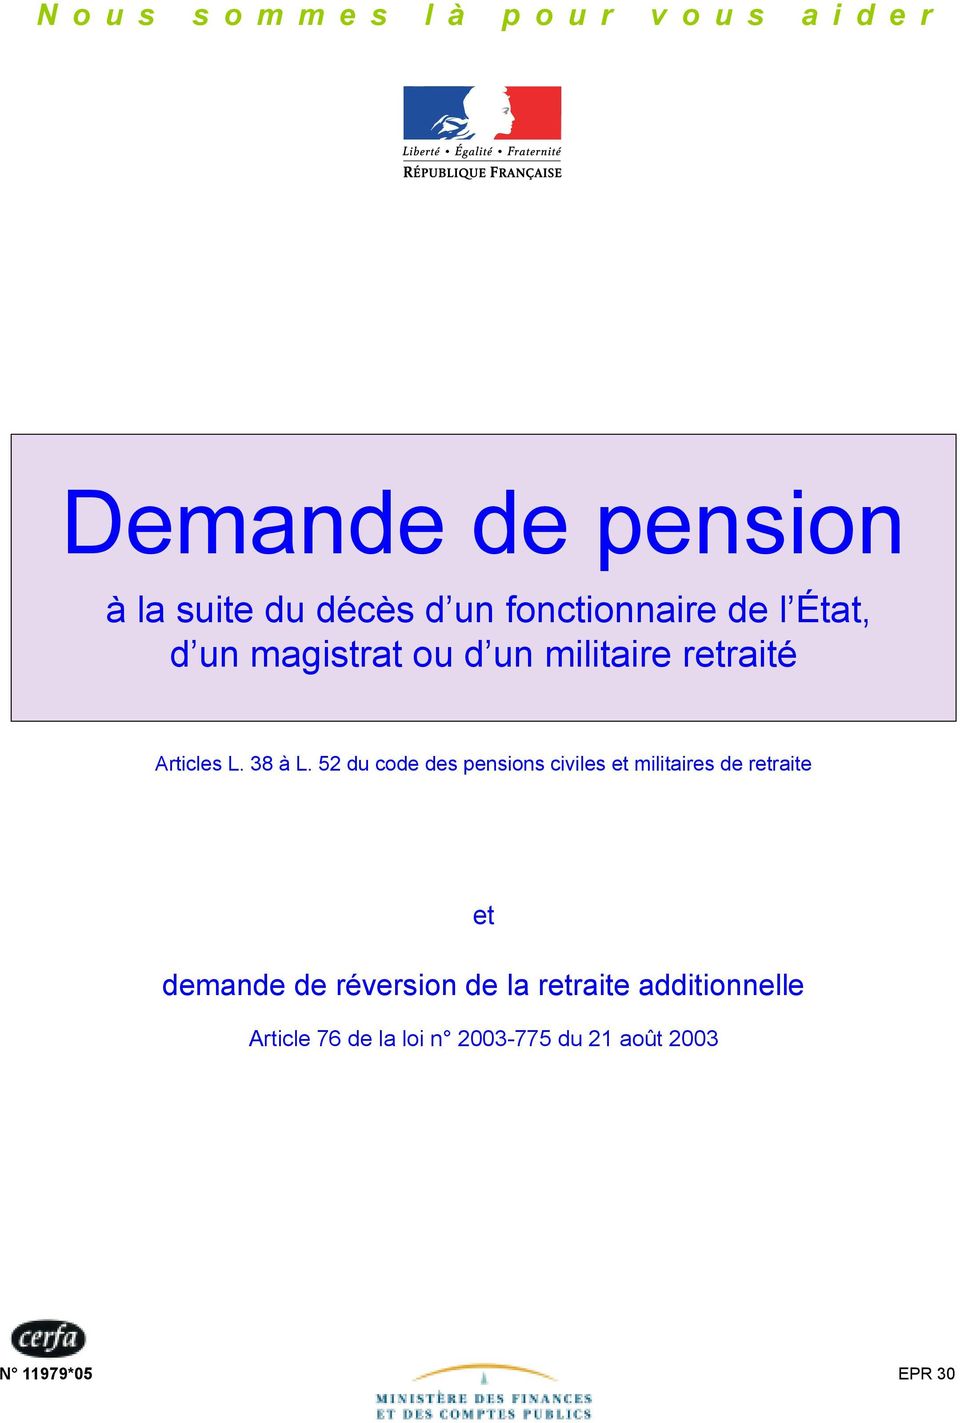 52 du code des pensions civiles et militaires de retraite